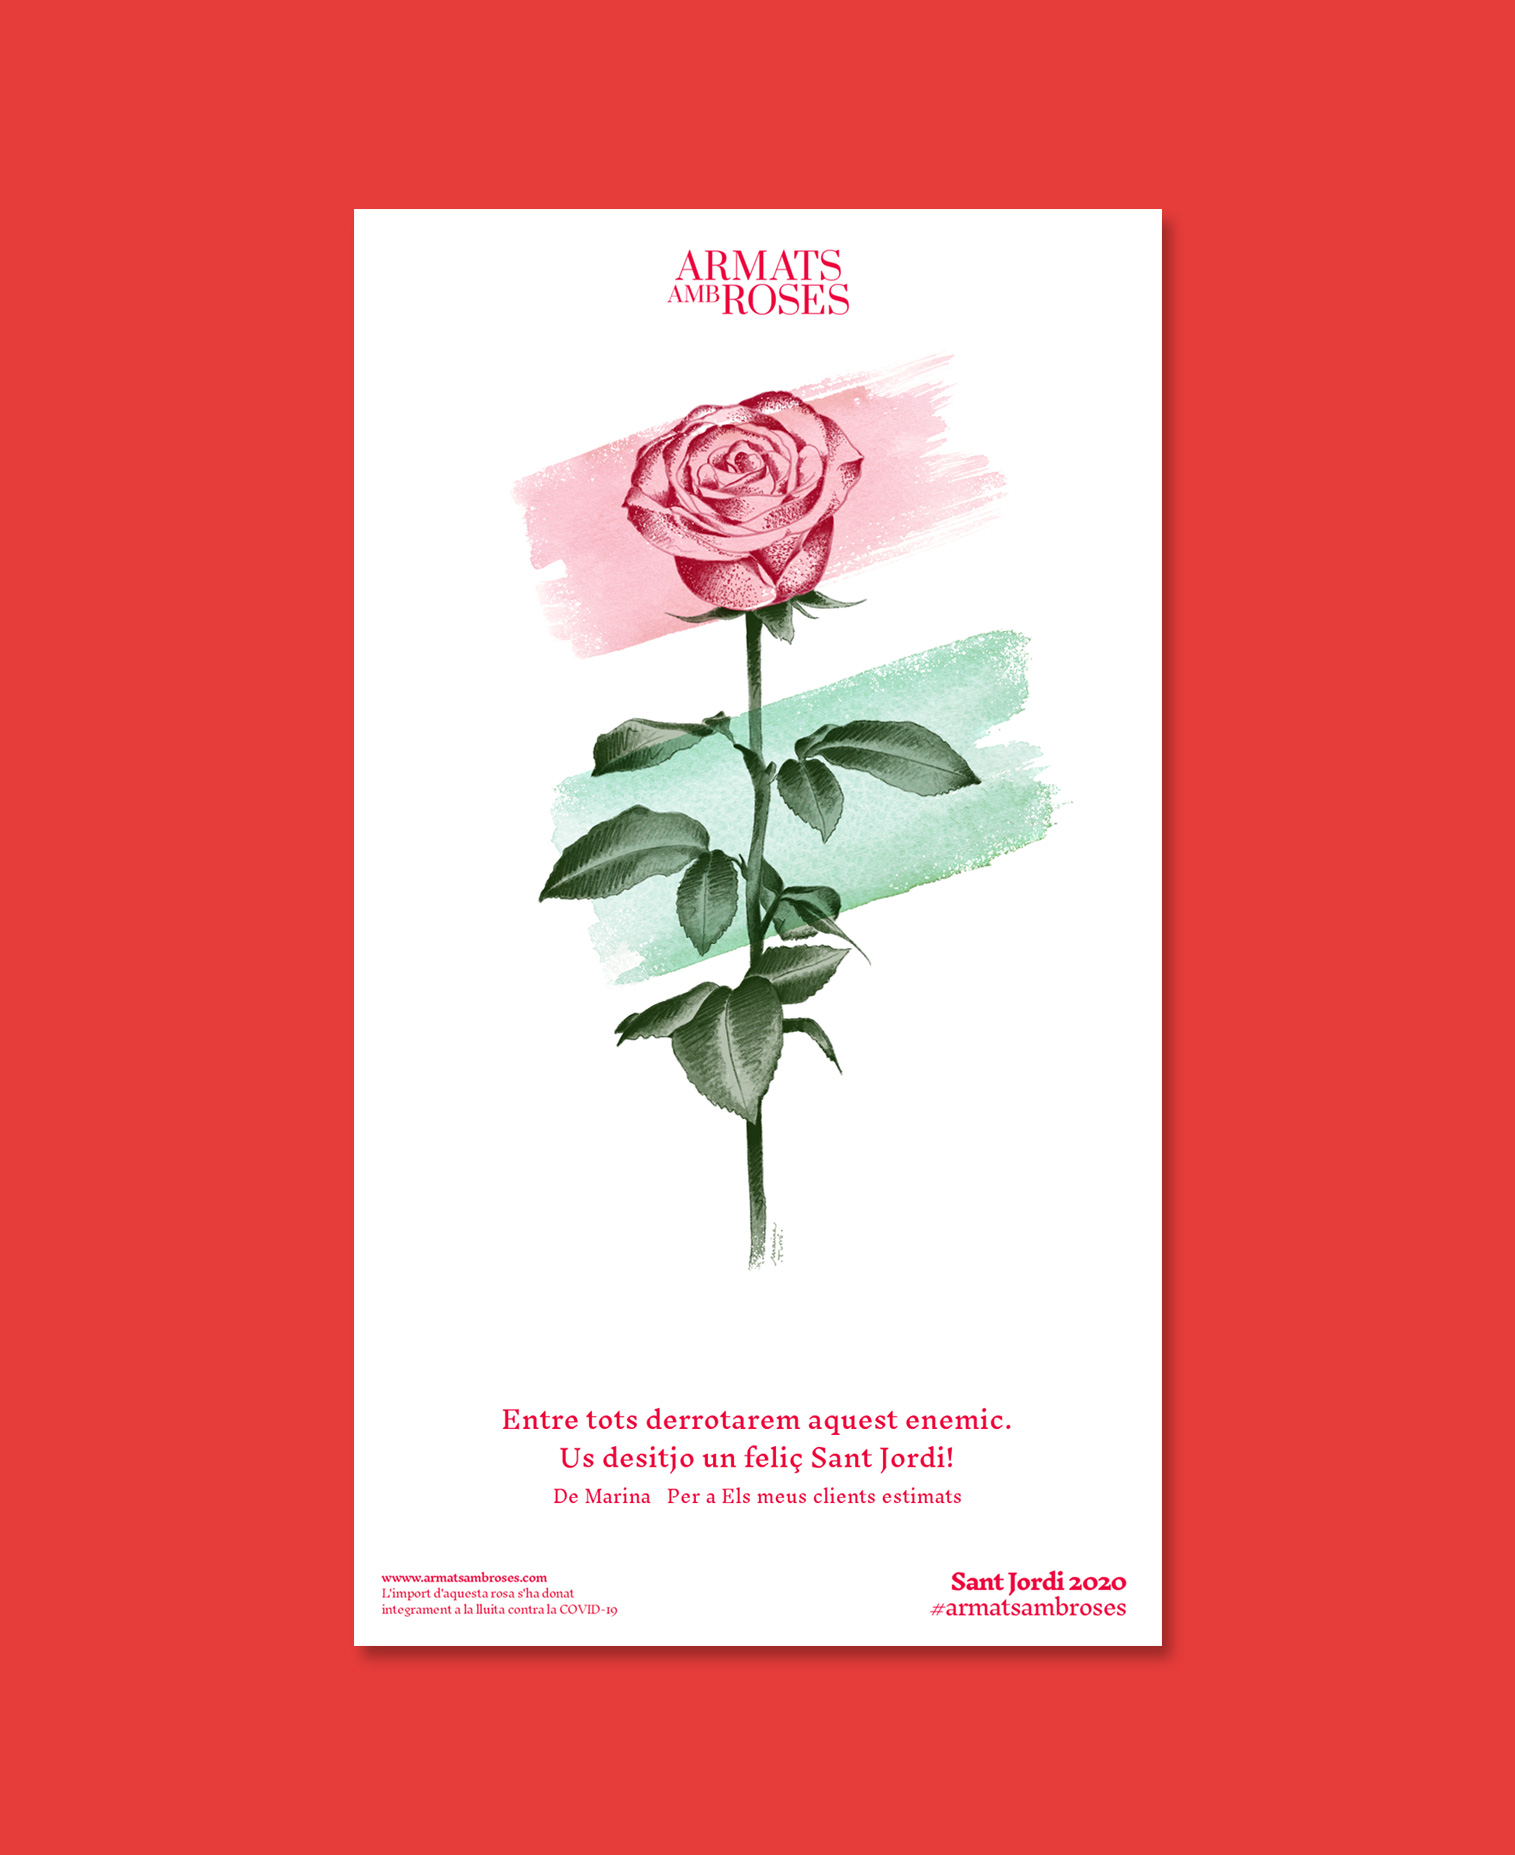 Sant Jordi 2020 Armats amb roses